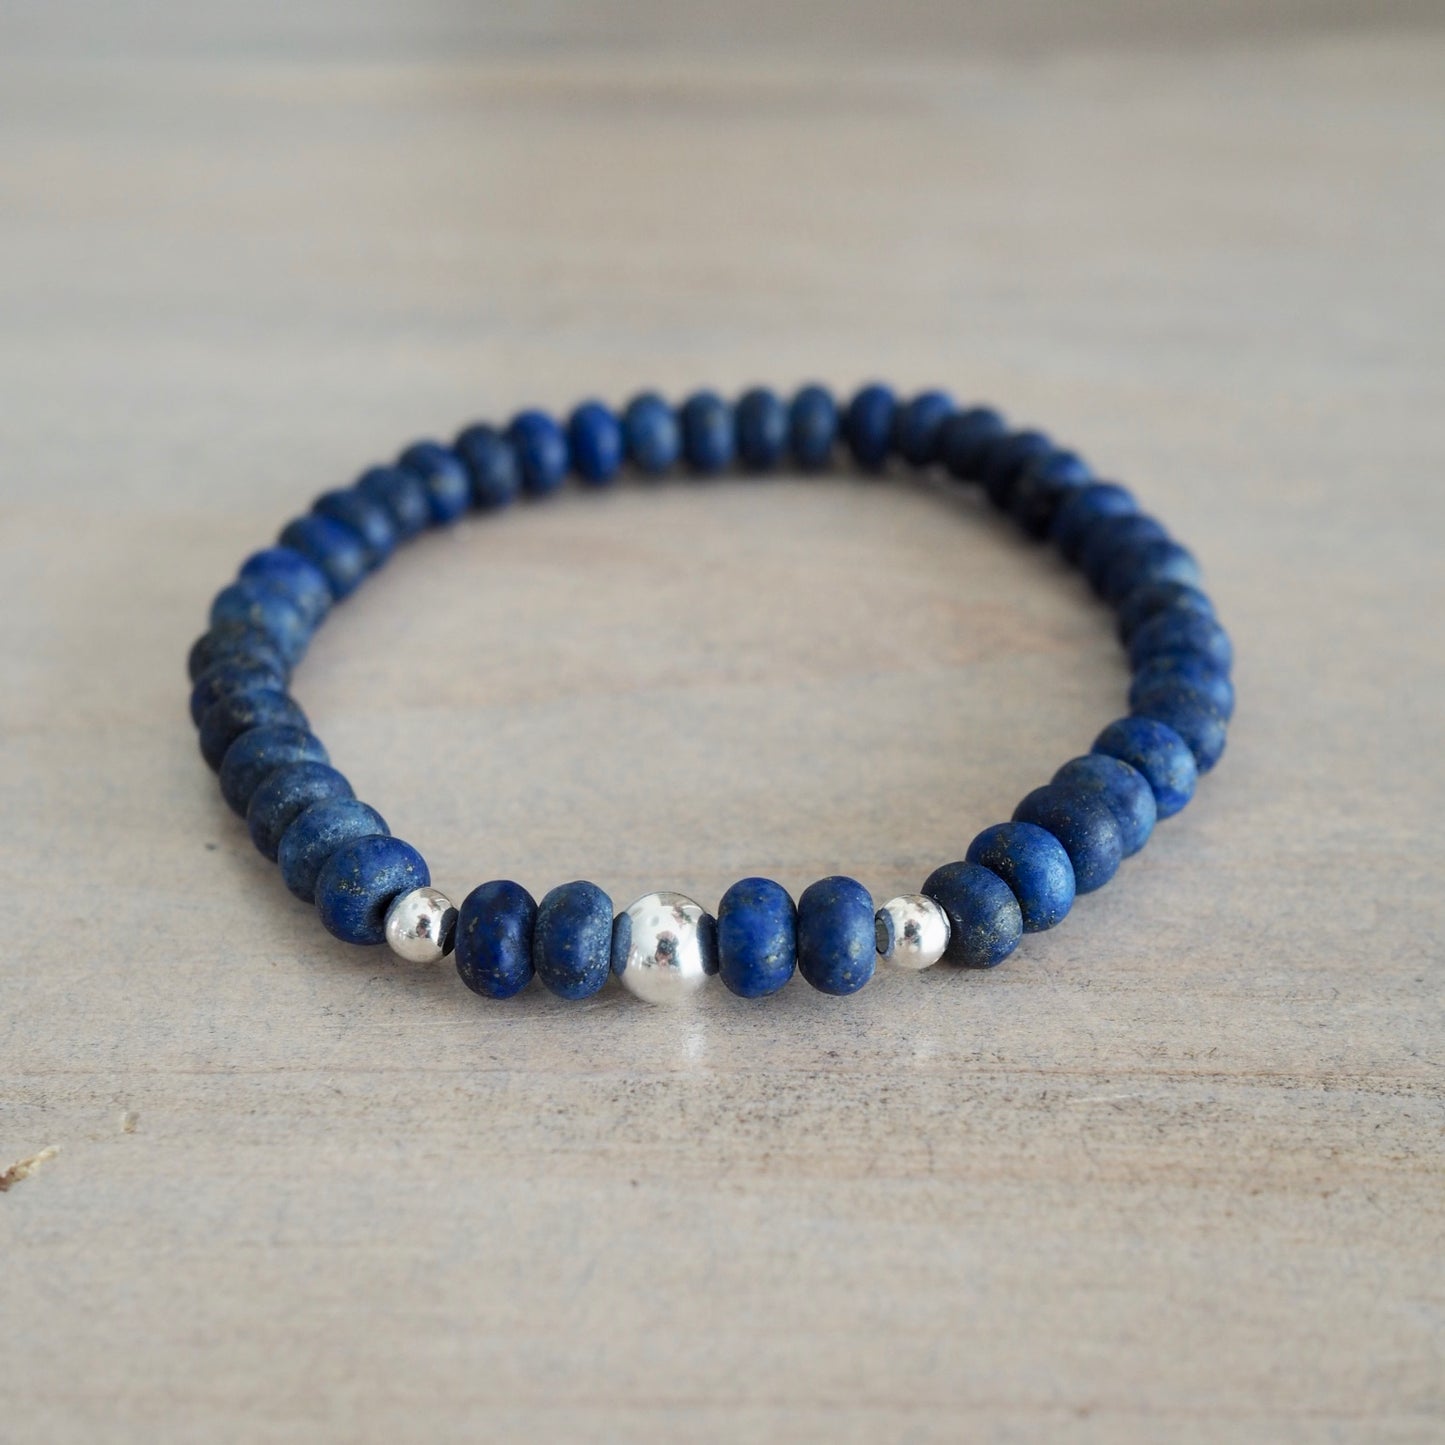 Lapis Lazuli Gemstone Stretch Bracelet by Wallis Designs